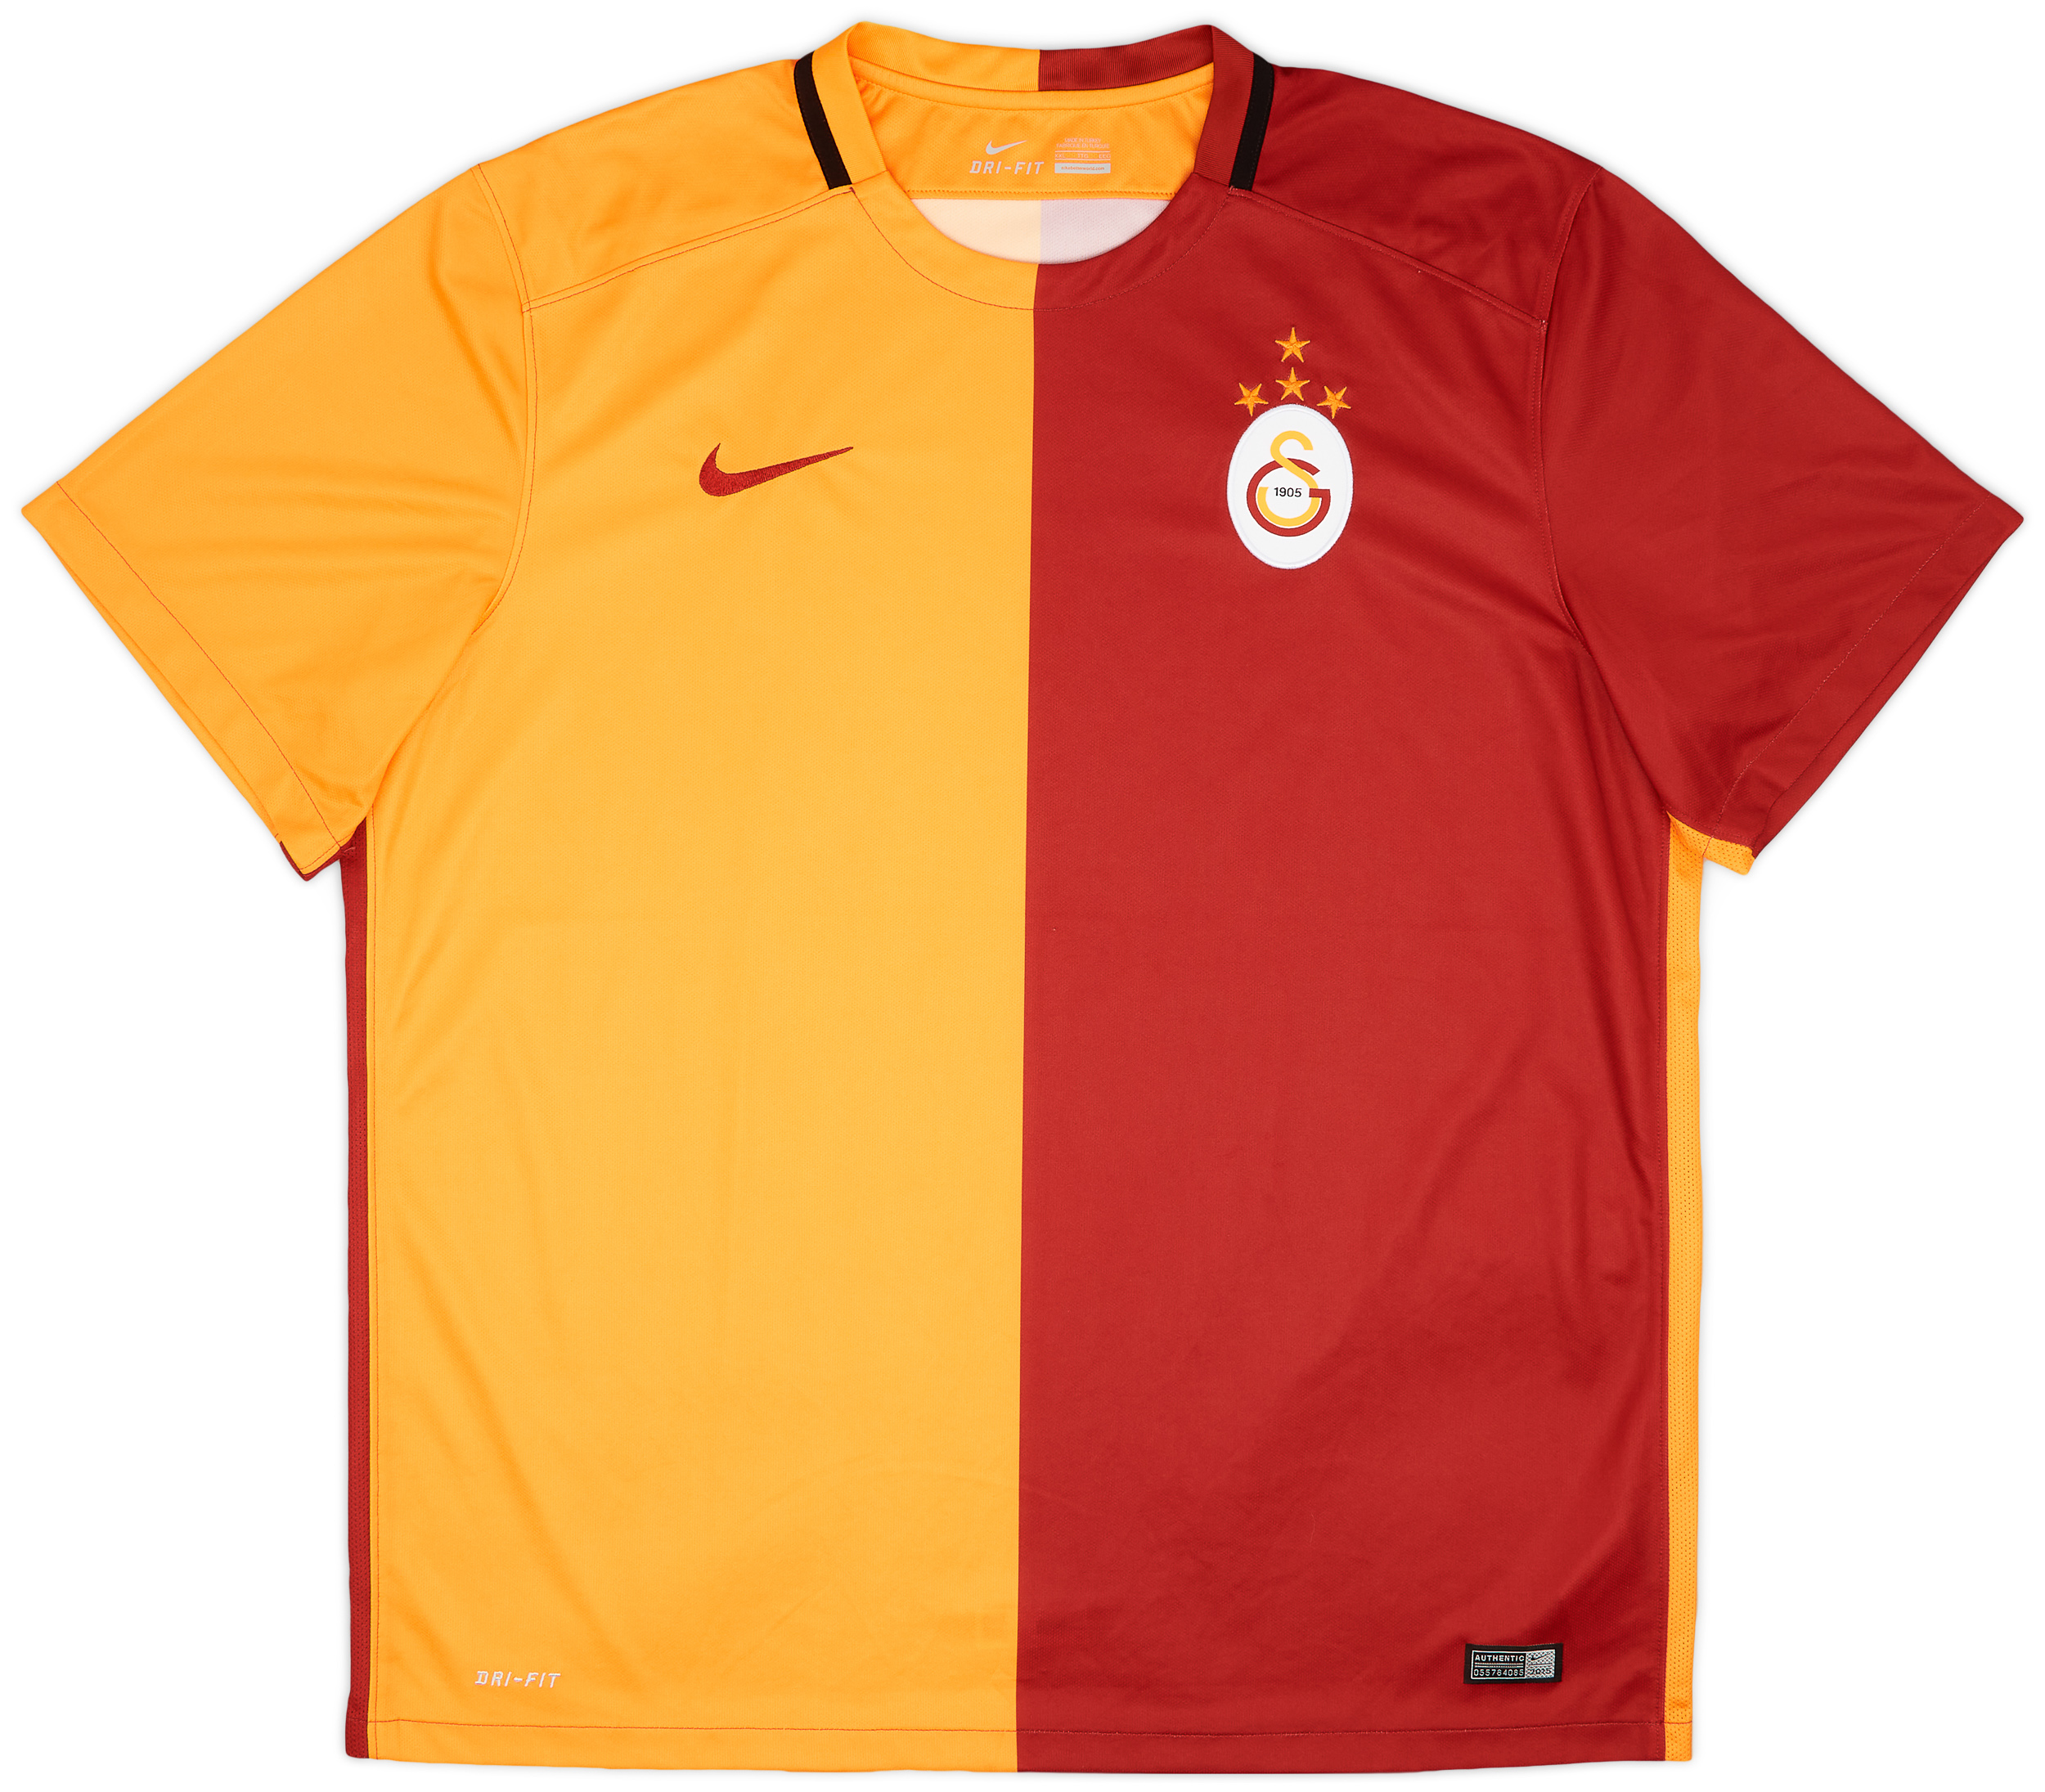 2015-16 Galatasaray Home Shirt - 9/10 - ()